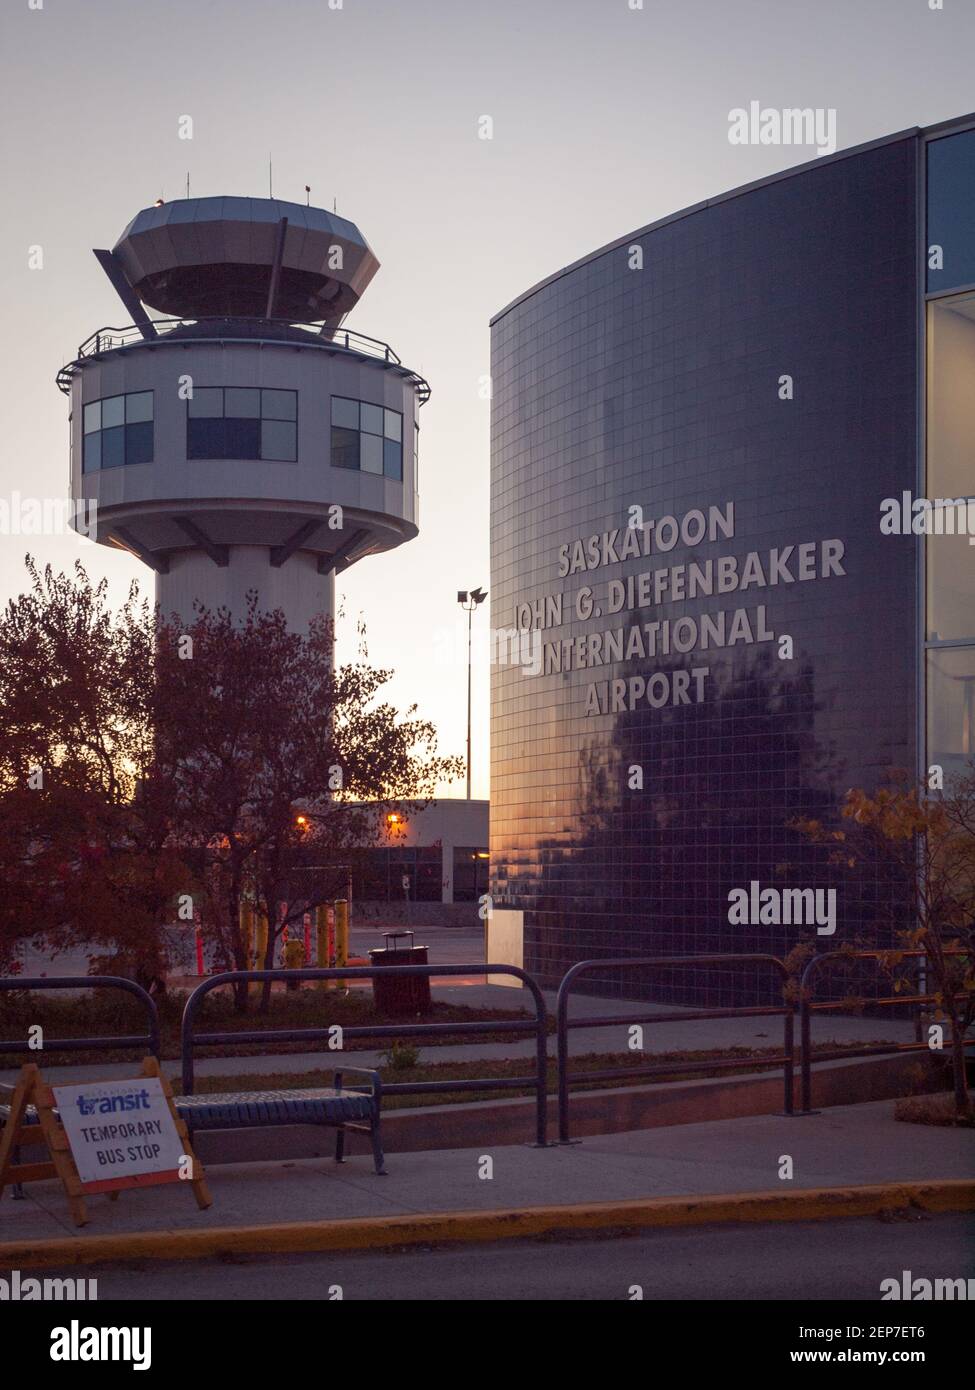 Una vista de la torre de control y el edificio terminal del Aeropuerto Internacional Saskatoon John G. Diefenbaker en Saskatoon, Saskatchewan, Canadá. Foto de stock